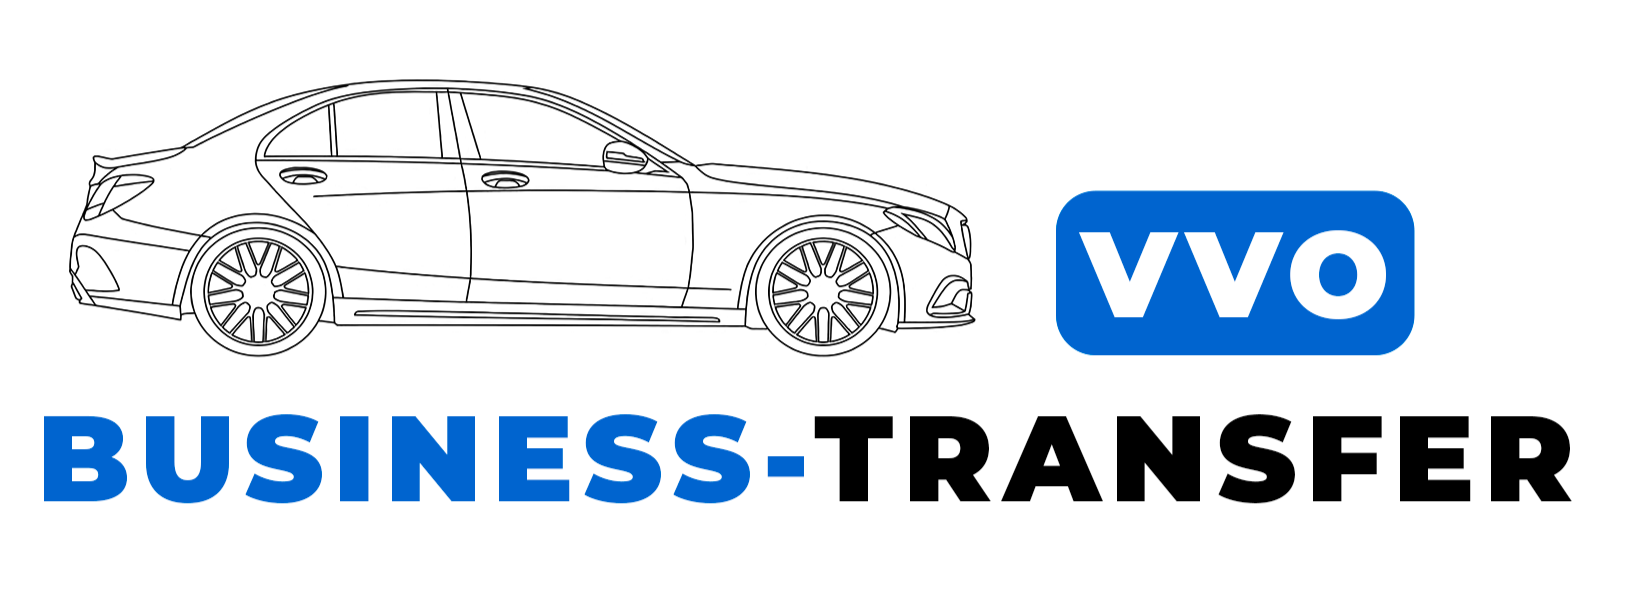 VVO Business Transfer